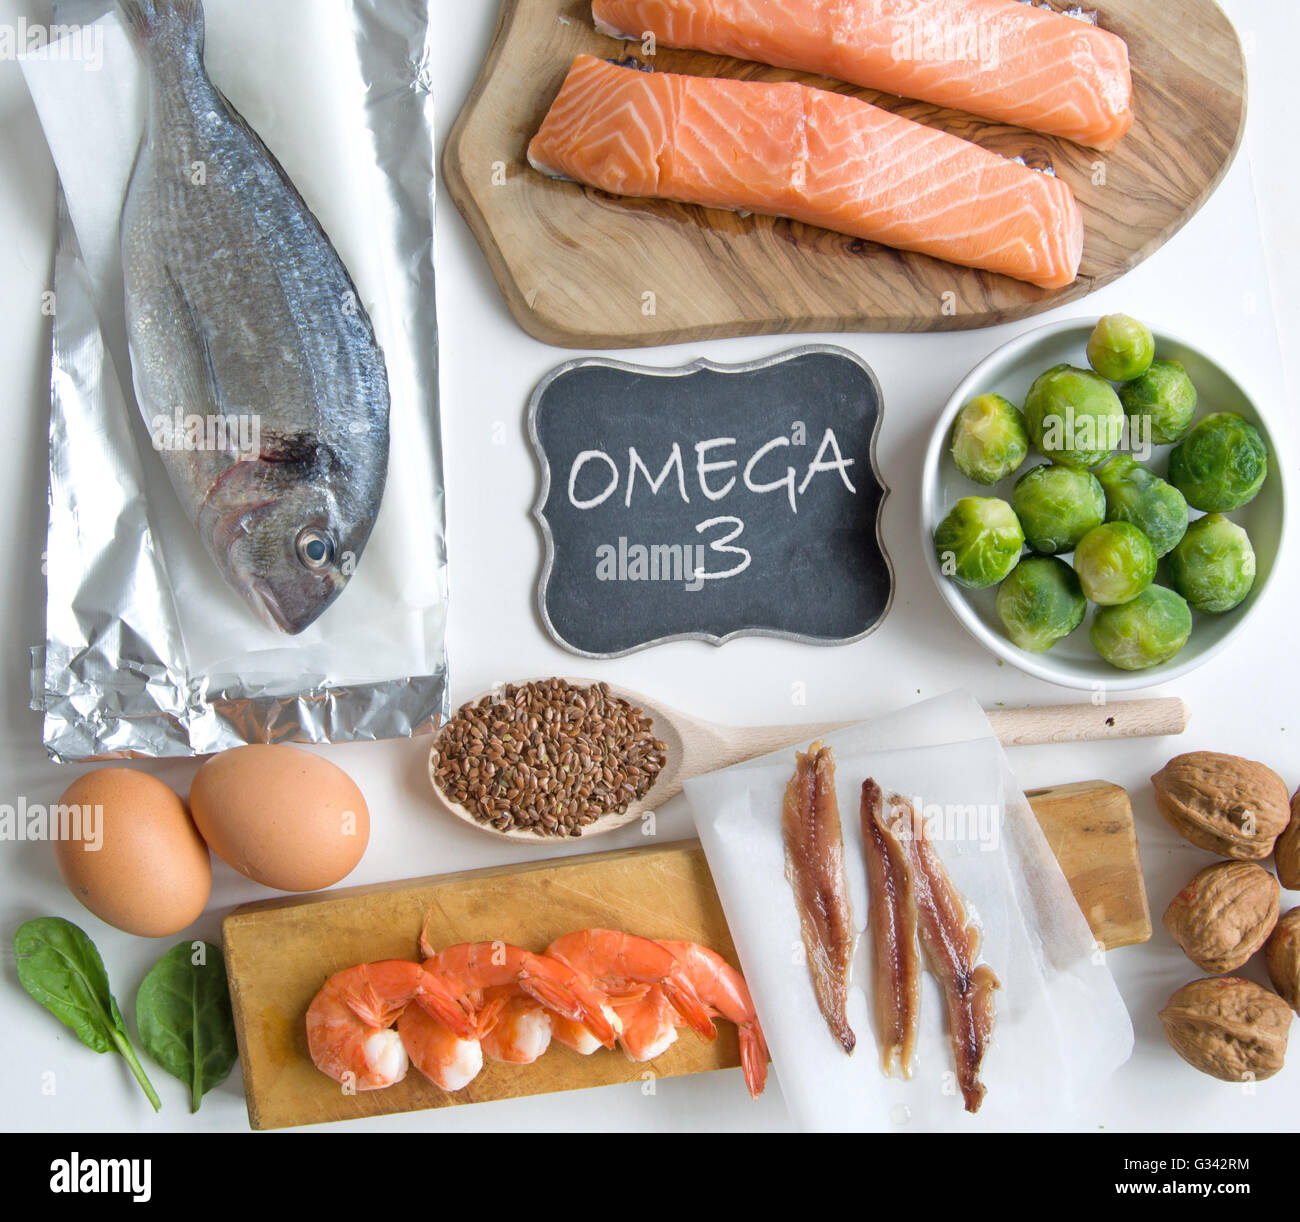 Recogida de alimentos ricos en ácidos grasos omega 3, incluyendo mariscos, legumbres y semillas Foto de stock